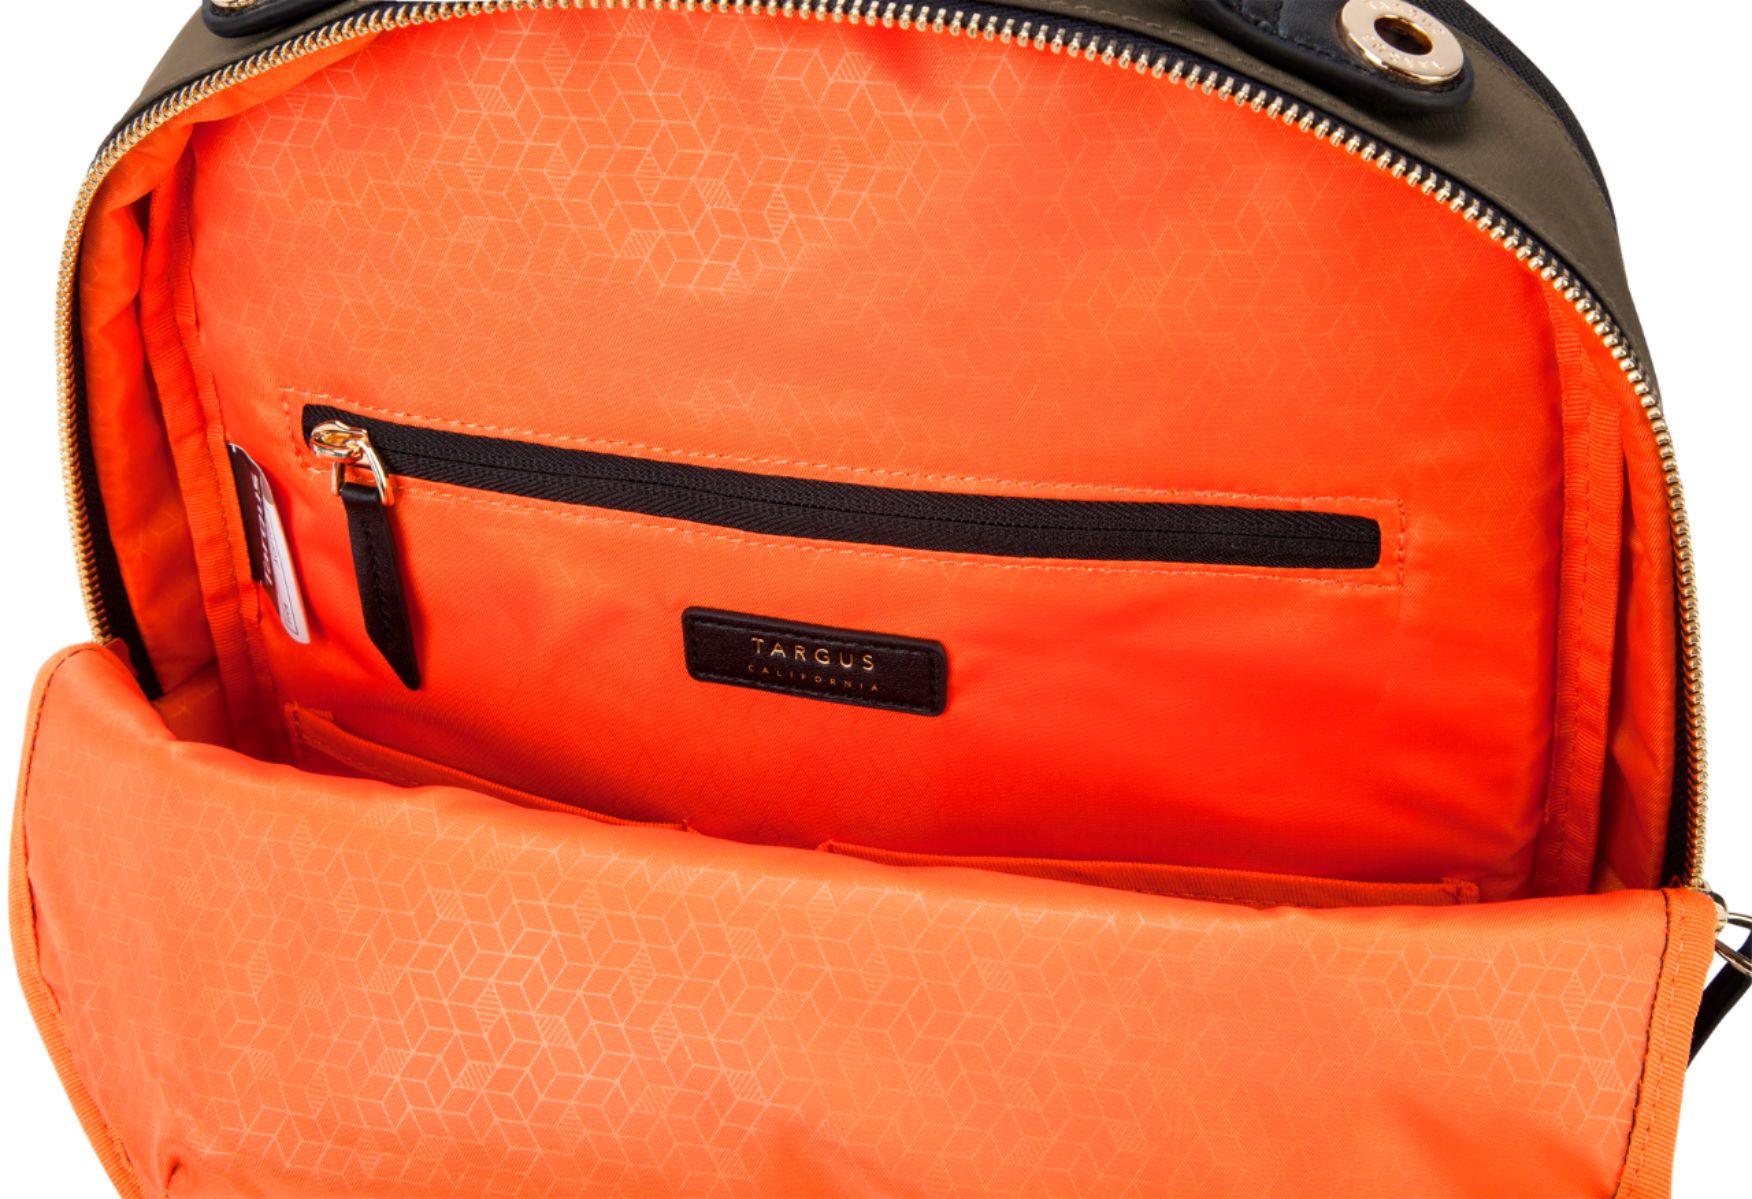 Best Buy: Targus Newport Backpack for 15 Laptops Olive TSB94502BT